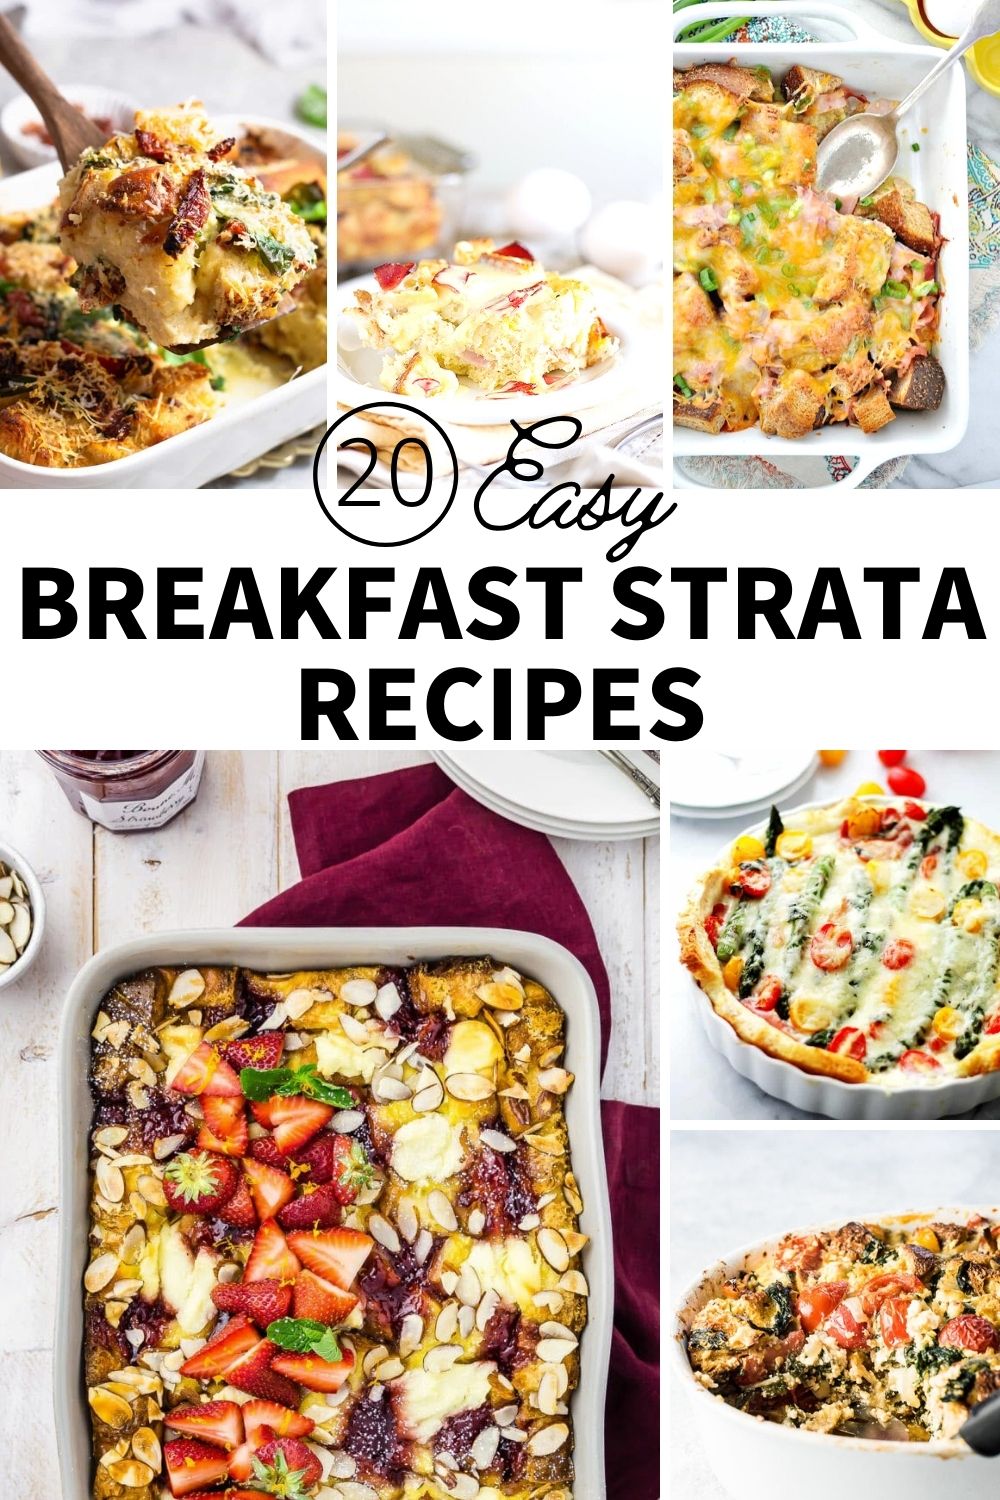 20 Easy Breakfast Strata Recipes - Peanut Blossom